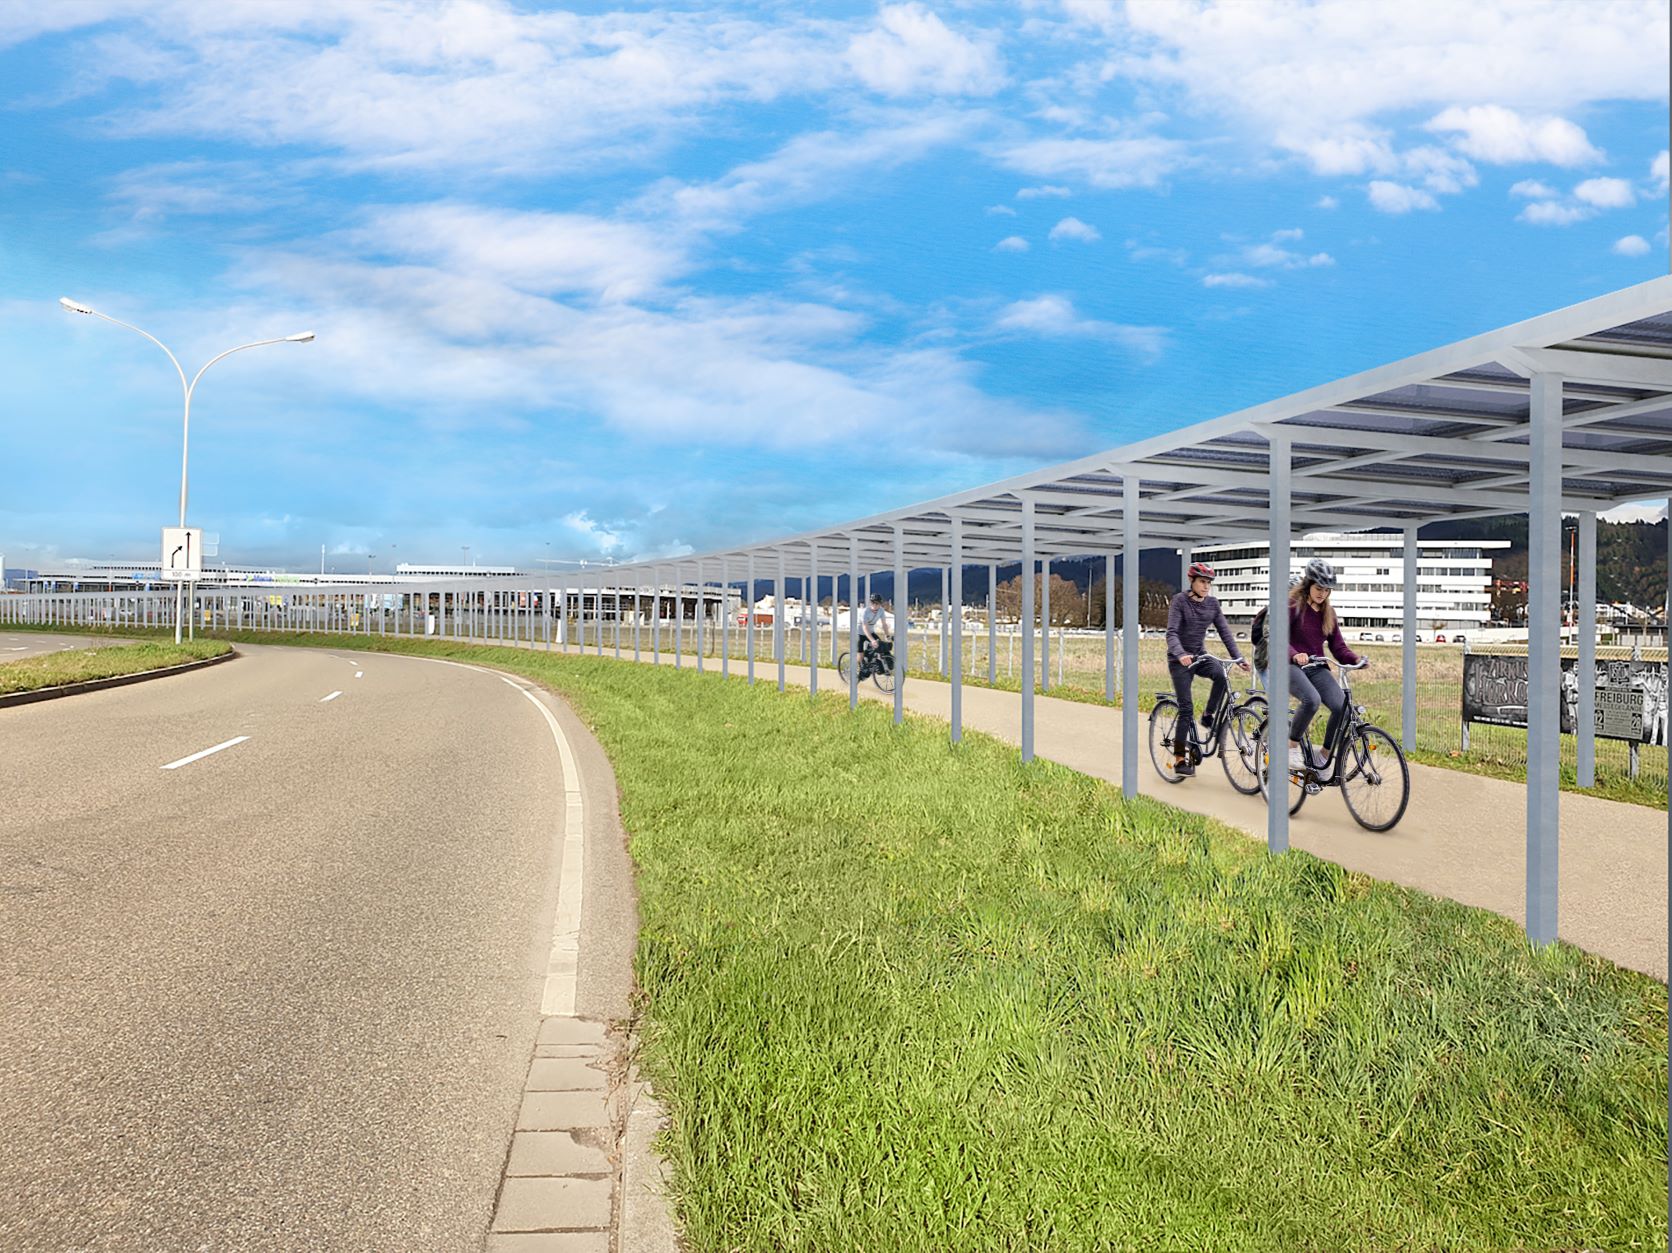 Bekommt Hamburg bald so einen Solar-Radweg wie Freiburg? (Visualisierung des Pilotprojekts, das gerade in Freiburg gebaut wird).